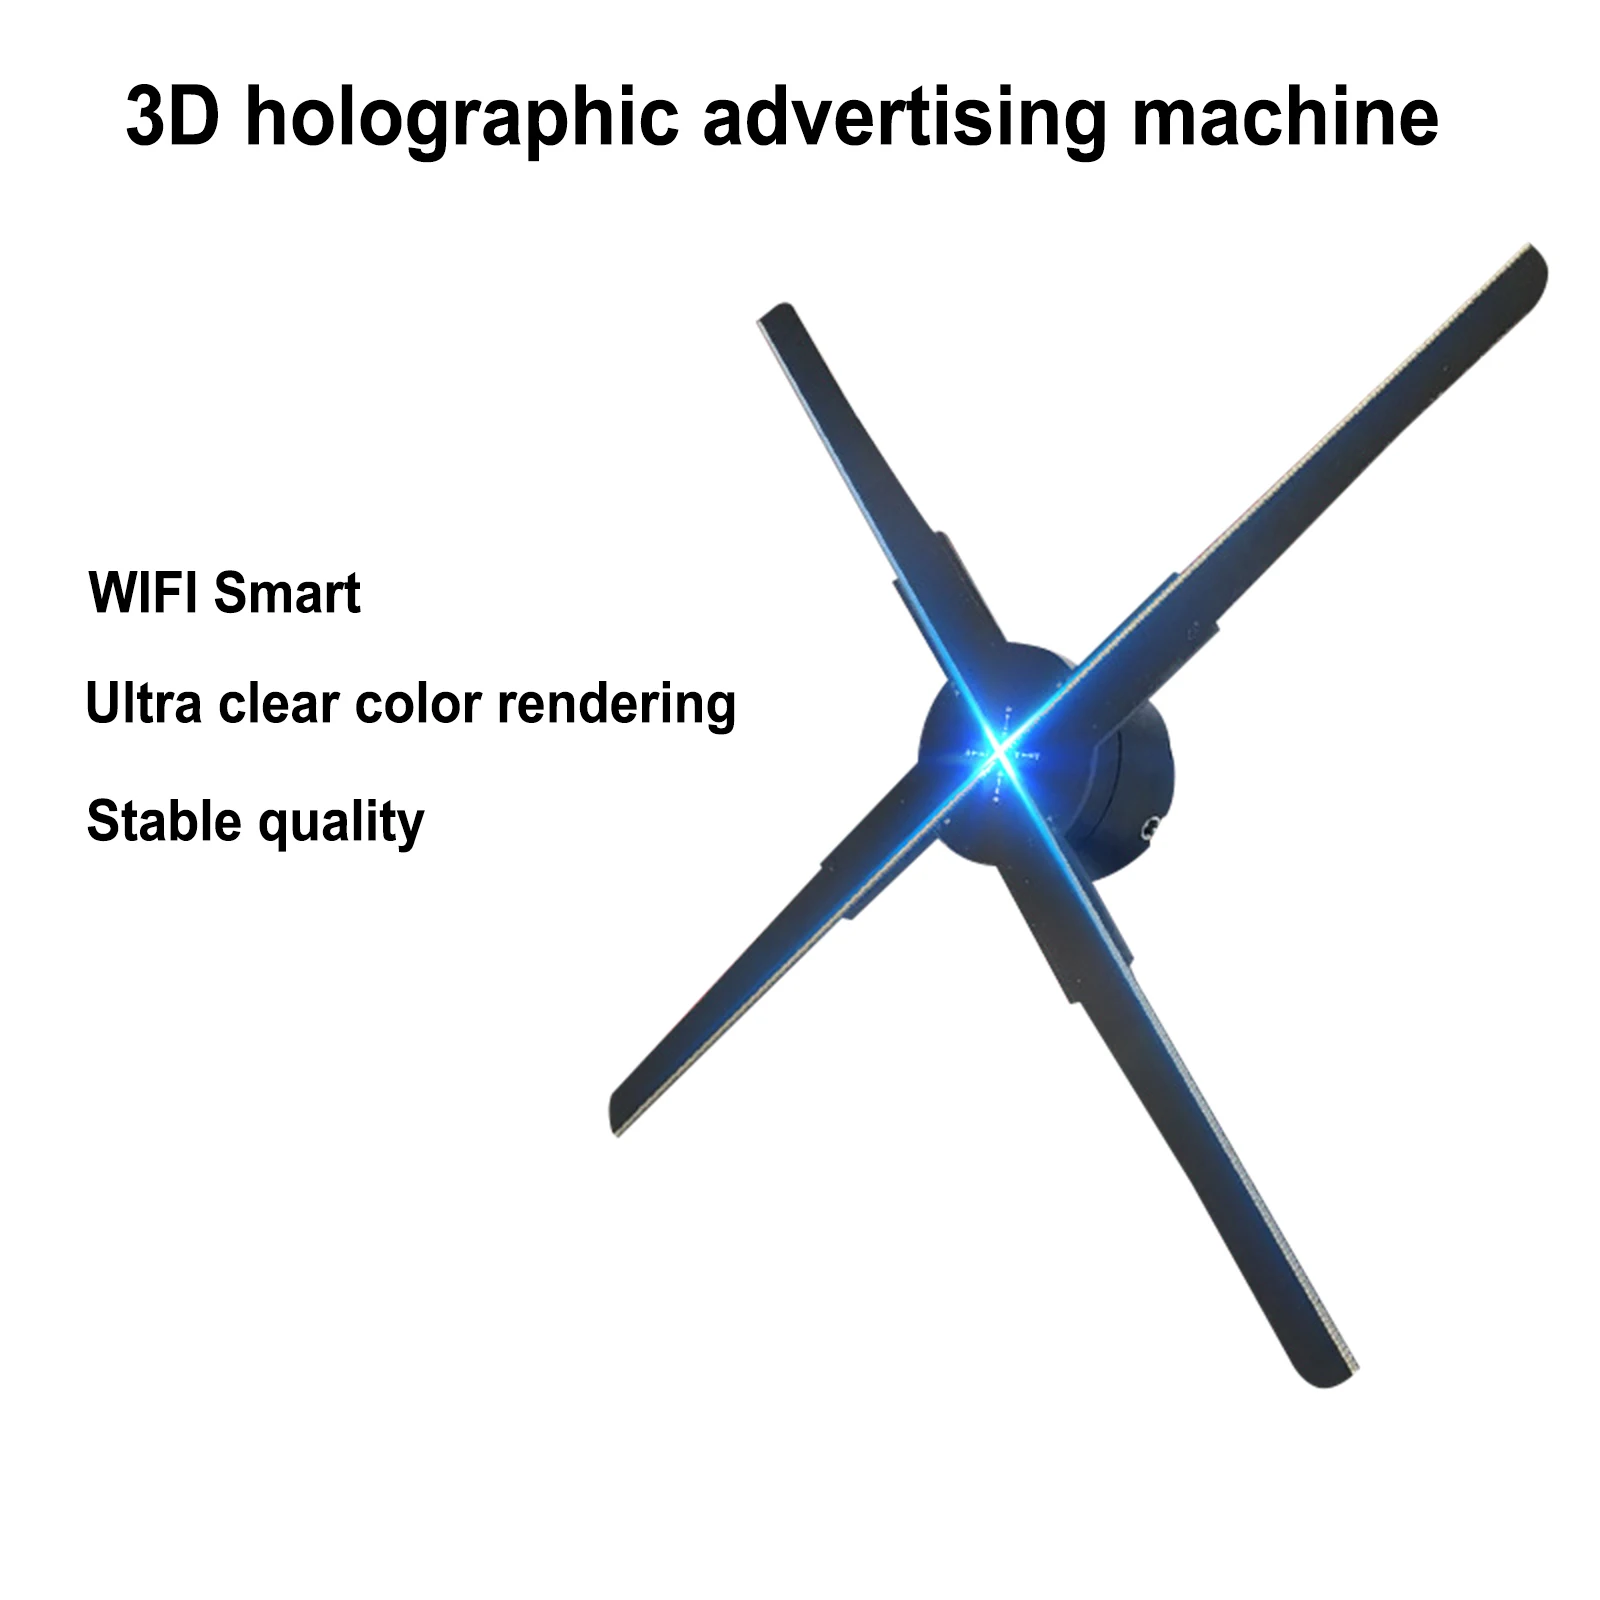 45cm 3D HD Fan Holographic Projector Wifi Advertising Machine Holographic Projector Support Image Video 3D Holographic Fan